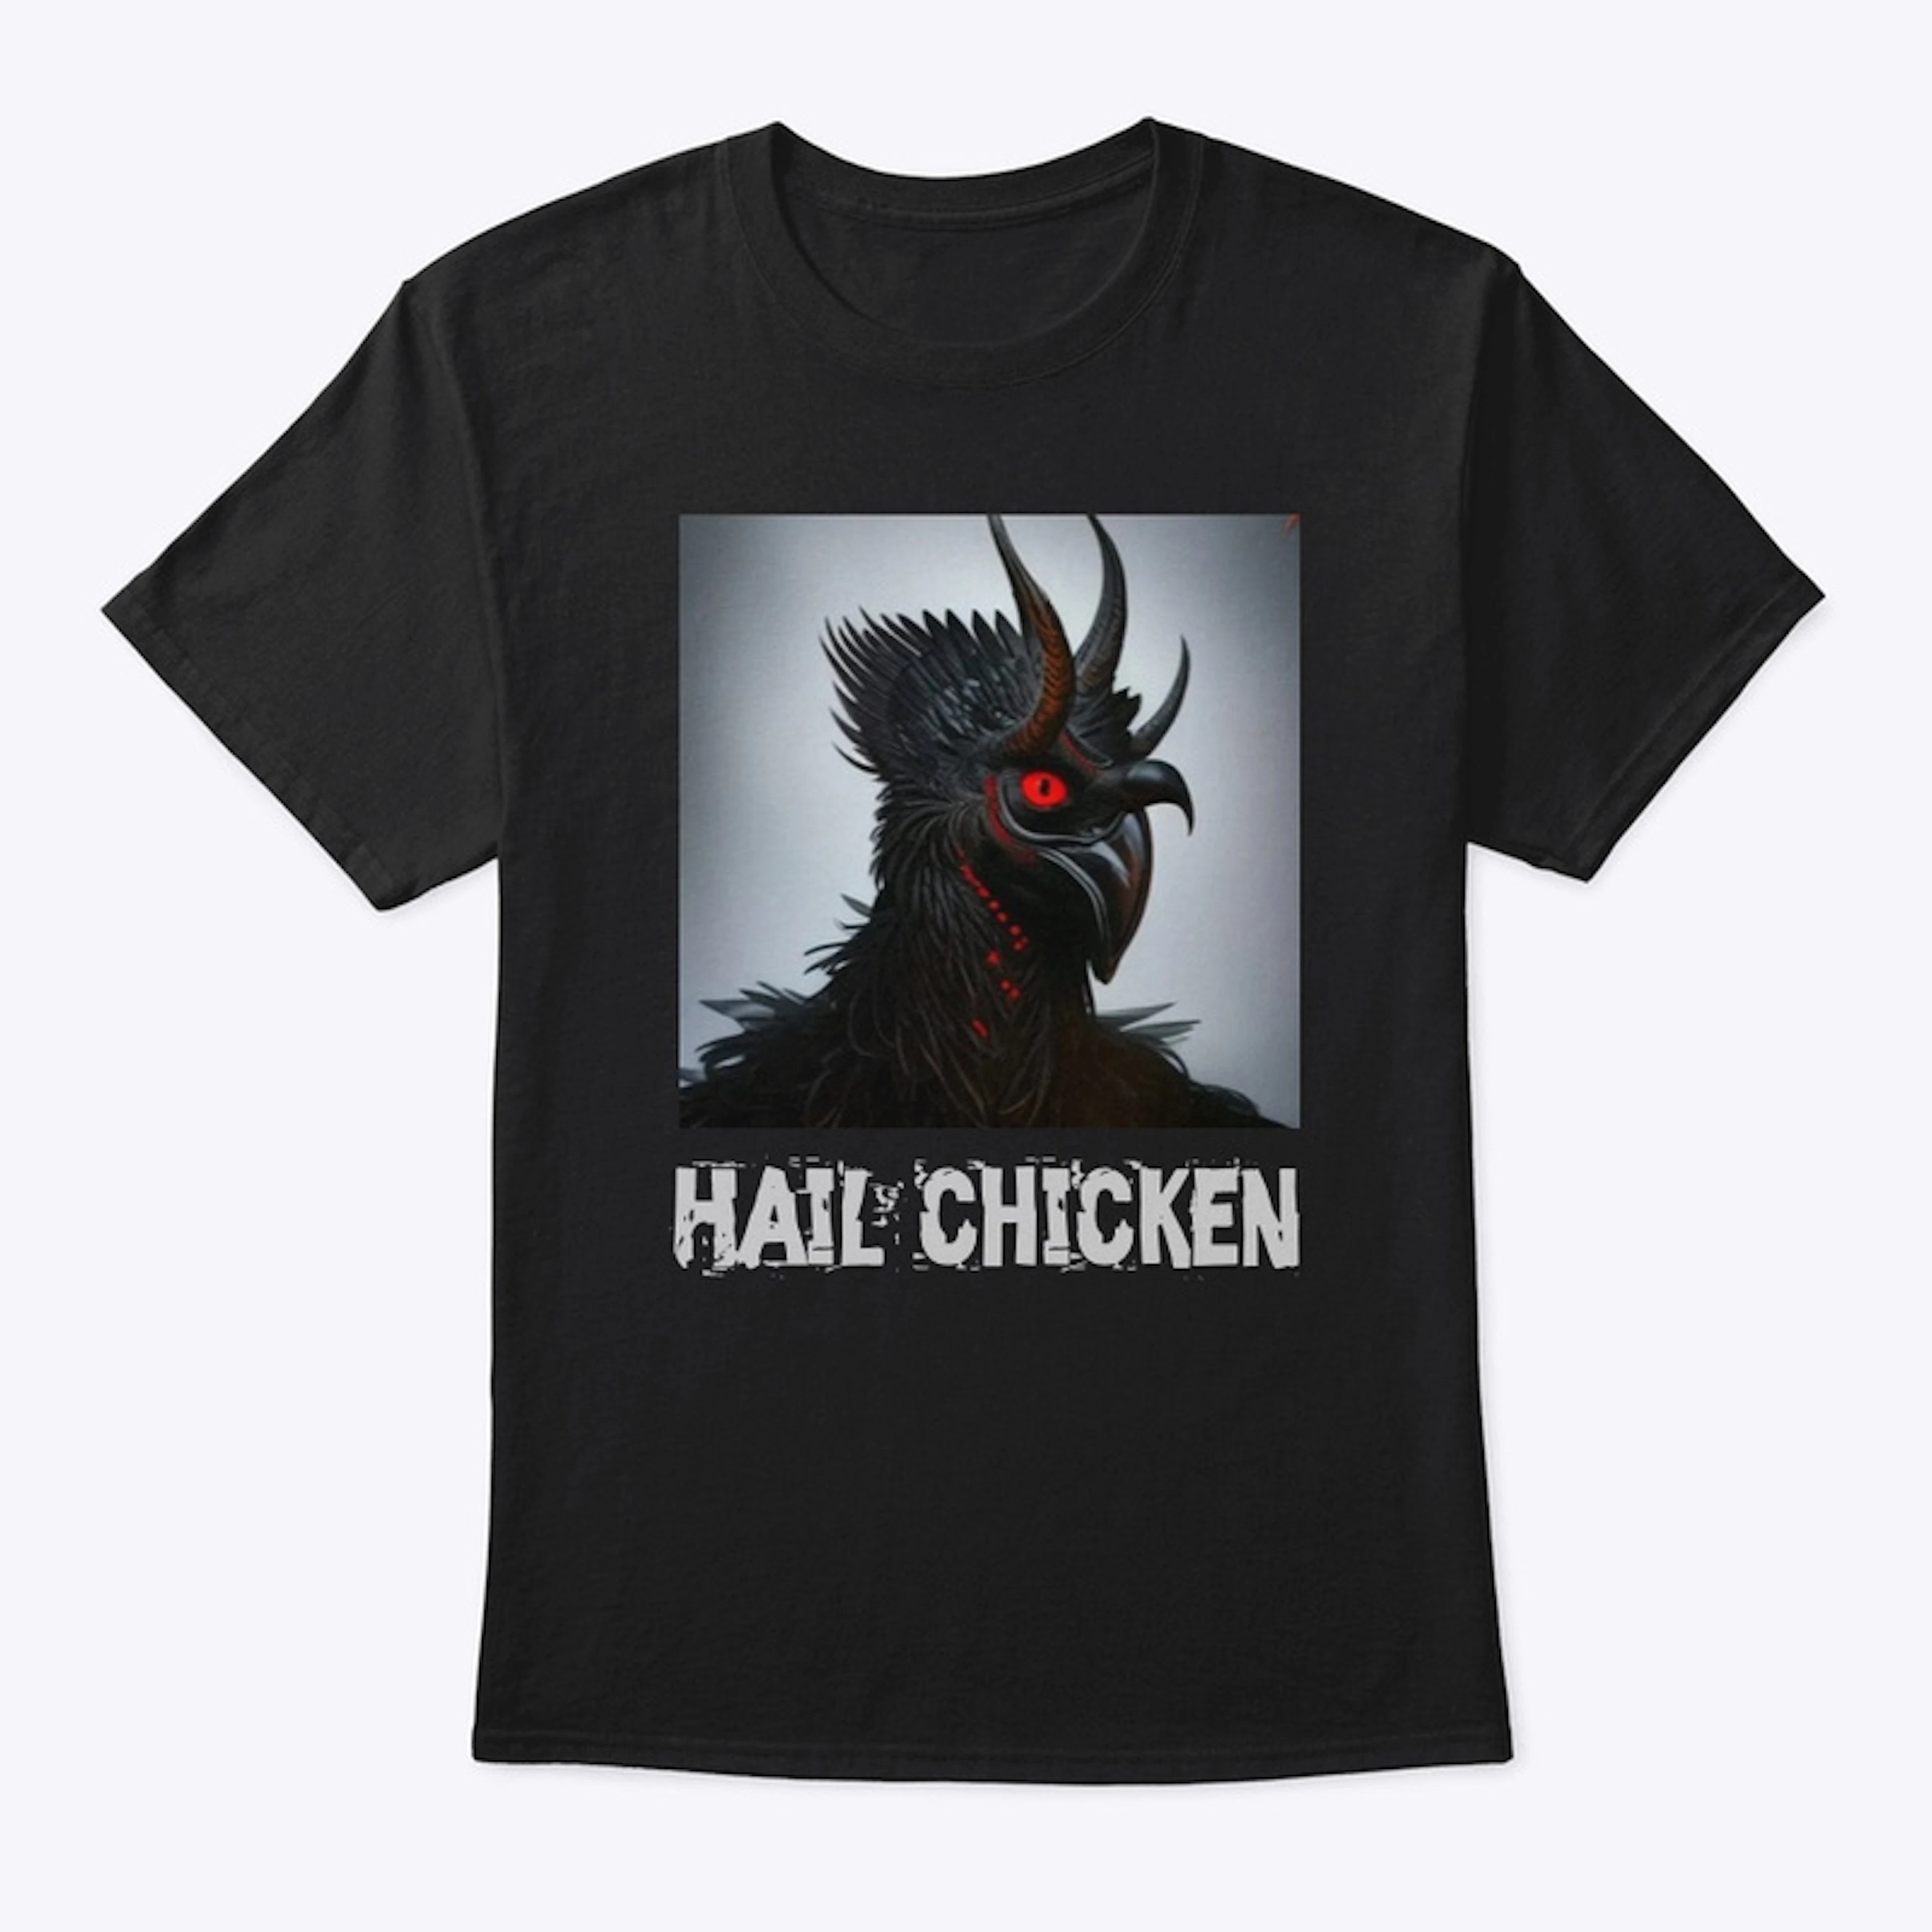 Hail chicken 